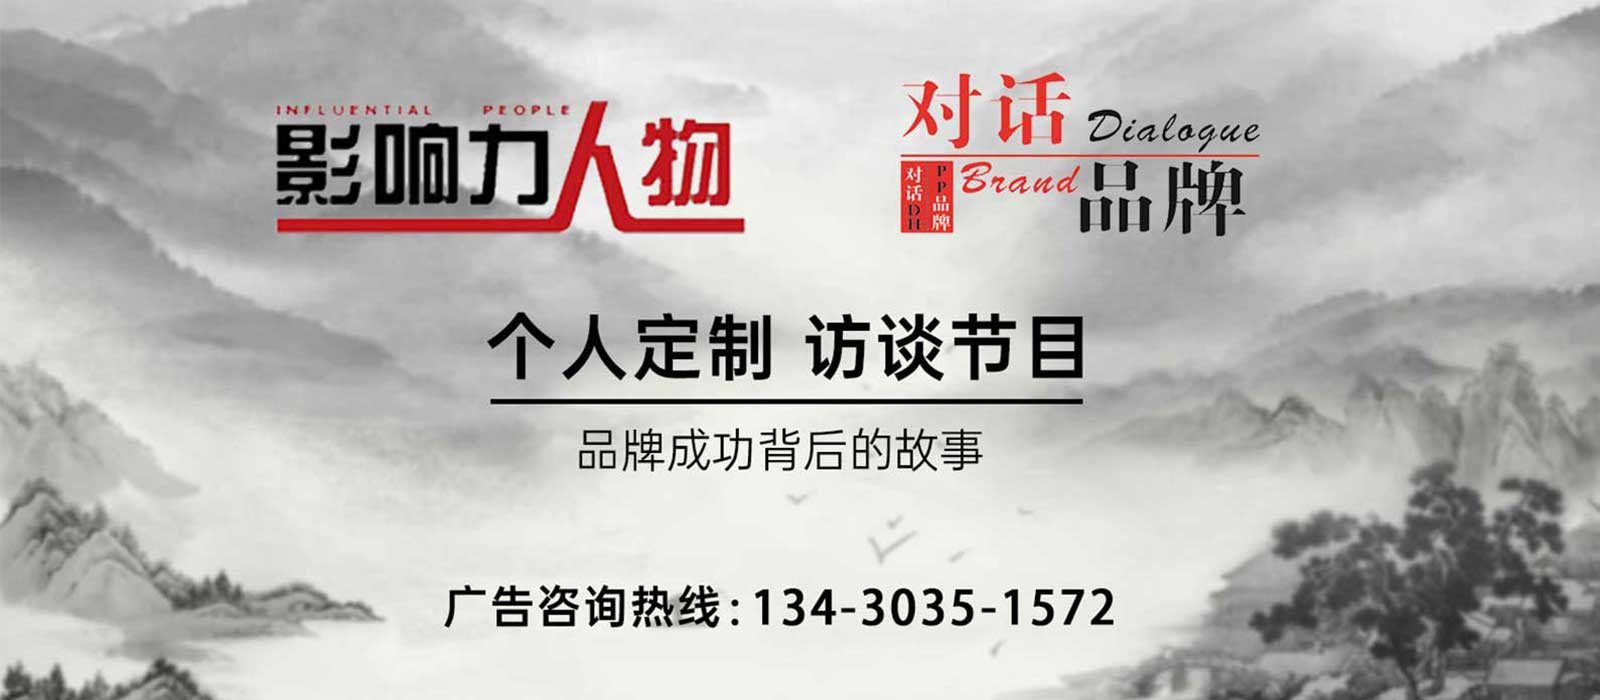 《影响力人物》广告植入,广东今视广告投放免费咨询电话：400-158-3088.